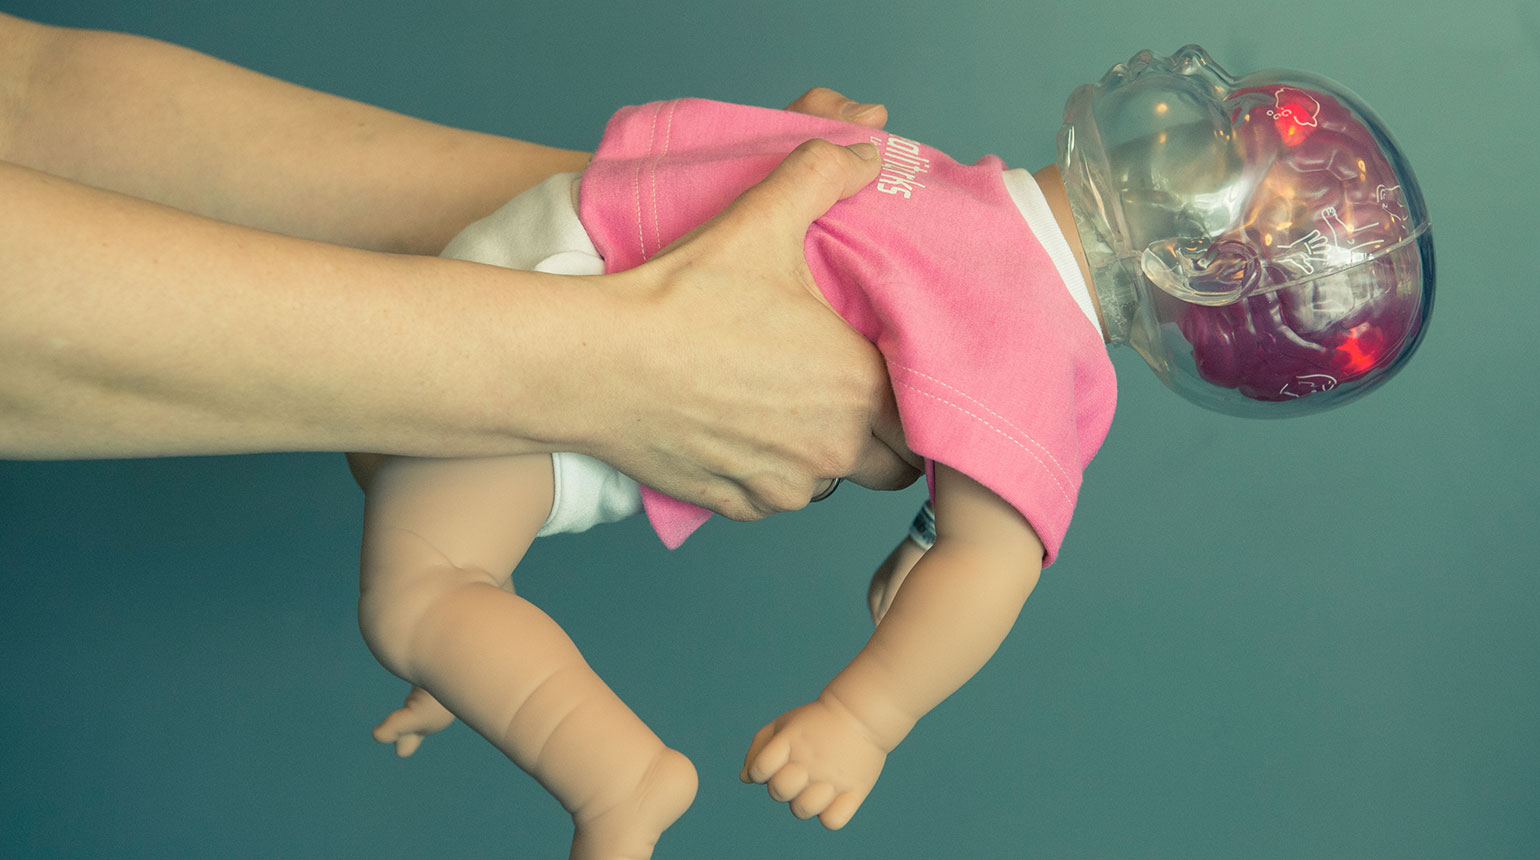 Nahaufnahme: Ein Mann hält eine „Shaken Baby“-Puppe. Der Körper wirkt echt, doch der Kopf ist aus durchsichtigem Plastik.